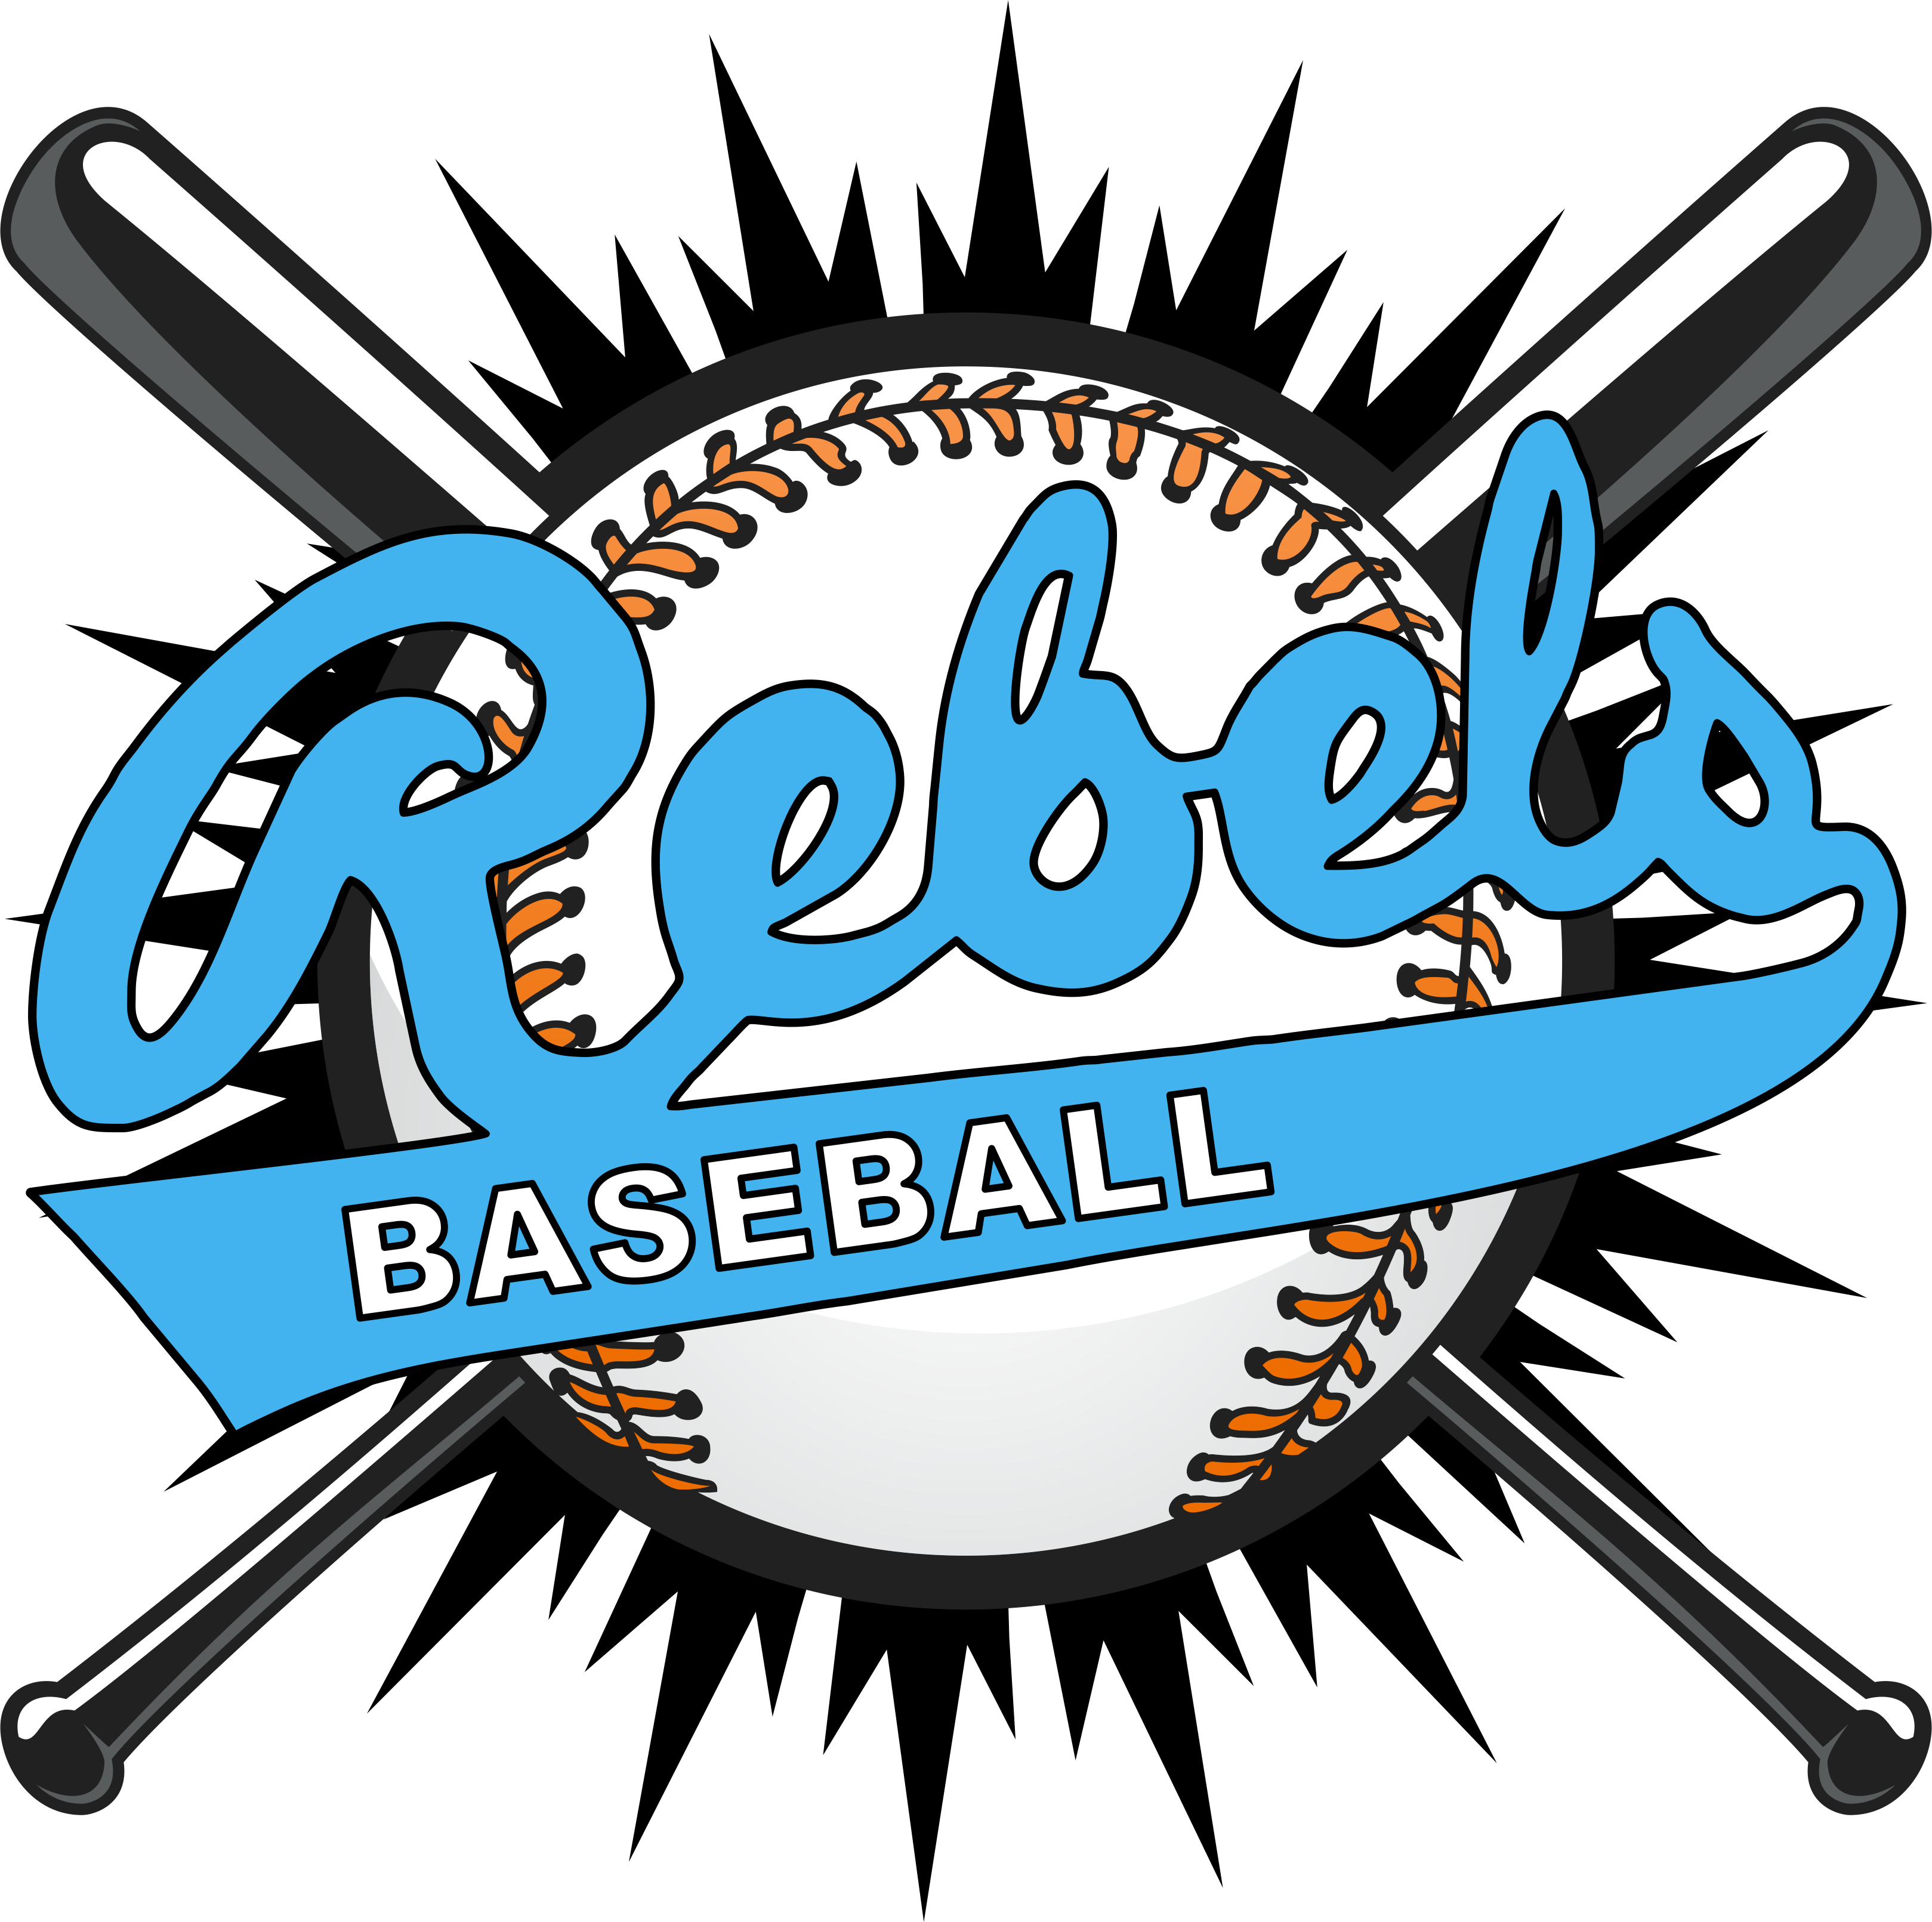 Rebel 6u Travel Baseball Team - Rebel 6u Travel Baseball Team (3238x3222)